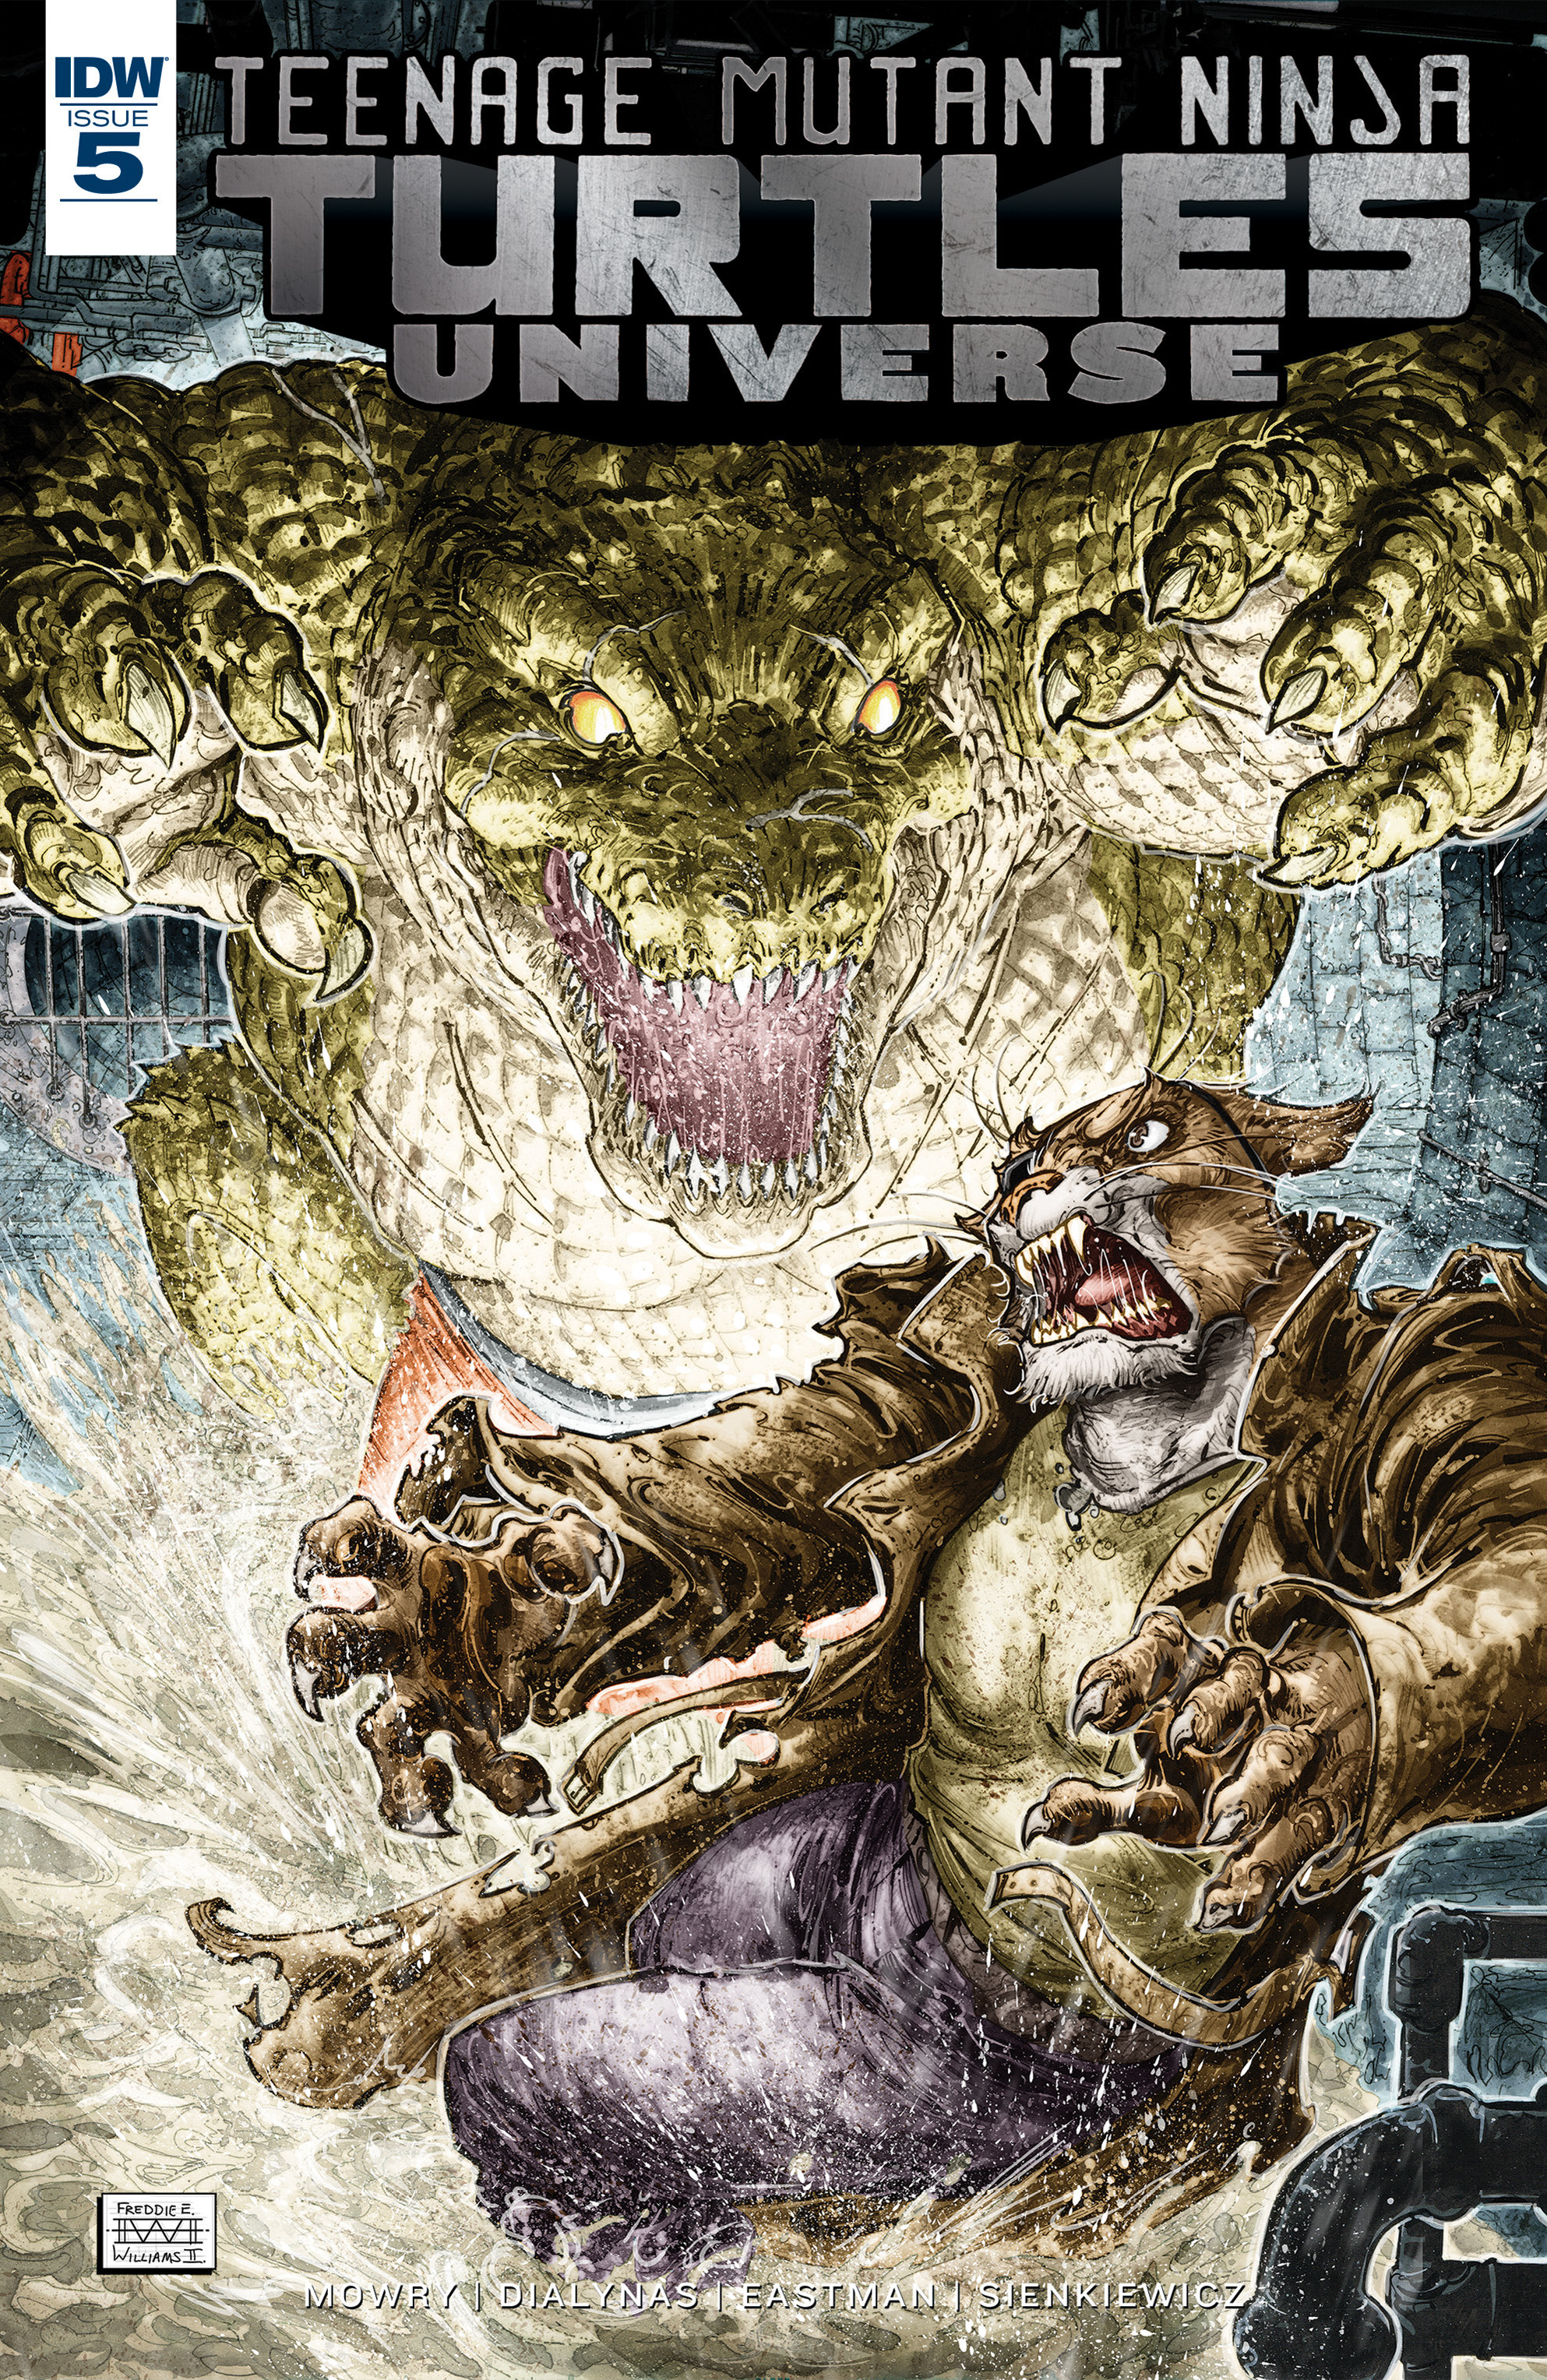 Read online Teenage Mutant Ninja Turtles Universe comic -  Issue #5 - 1